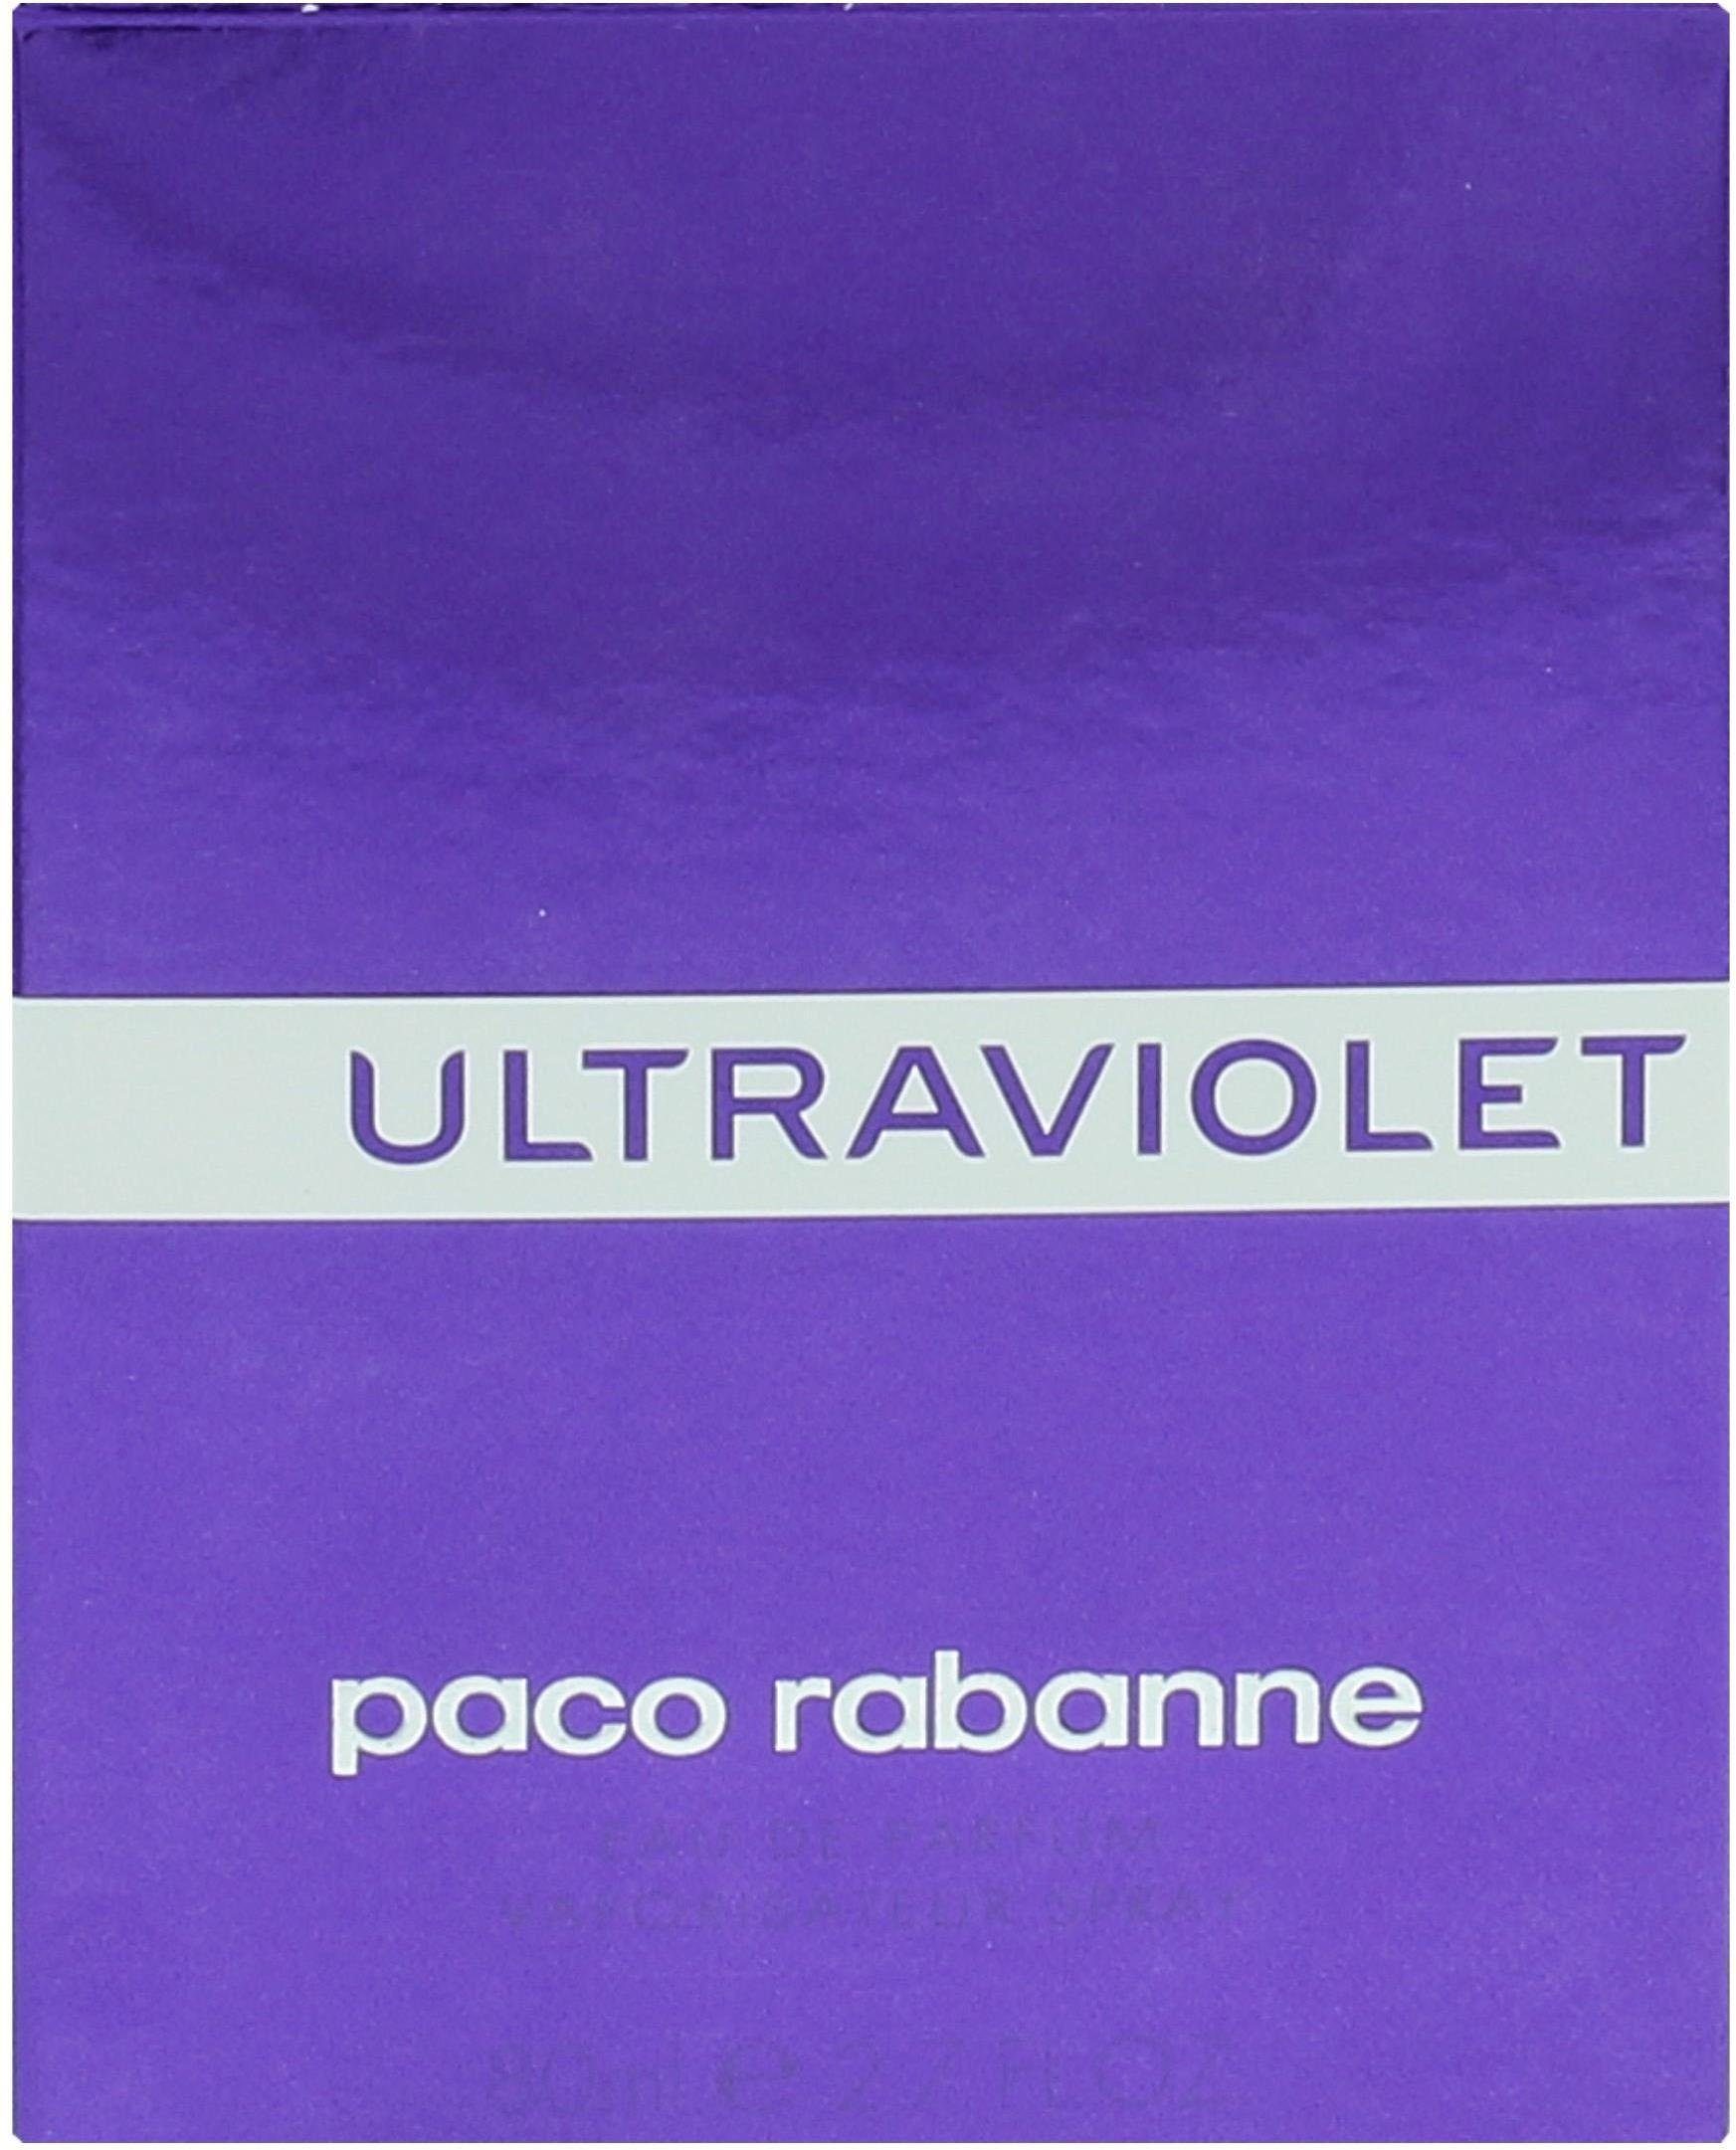 paco Ultraviolet Woman rabanne Eau Parfum de